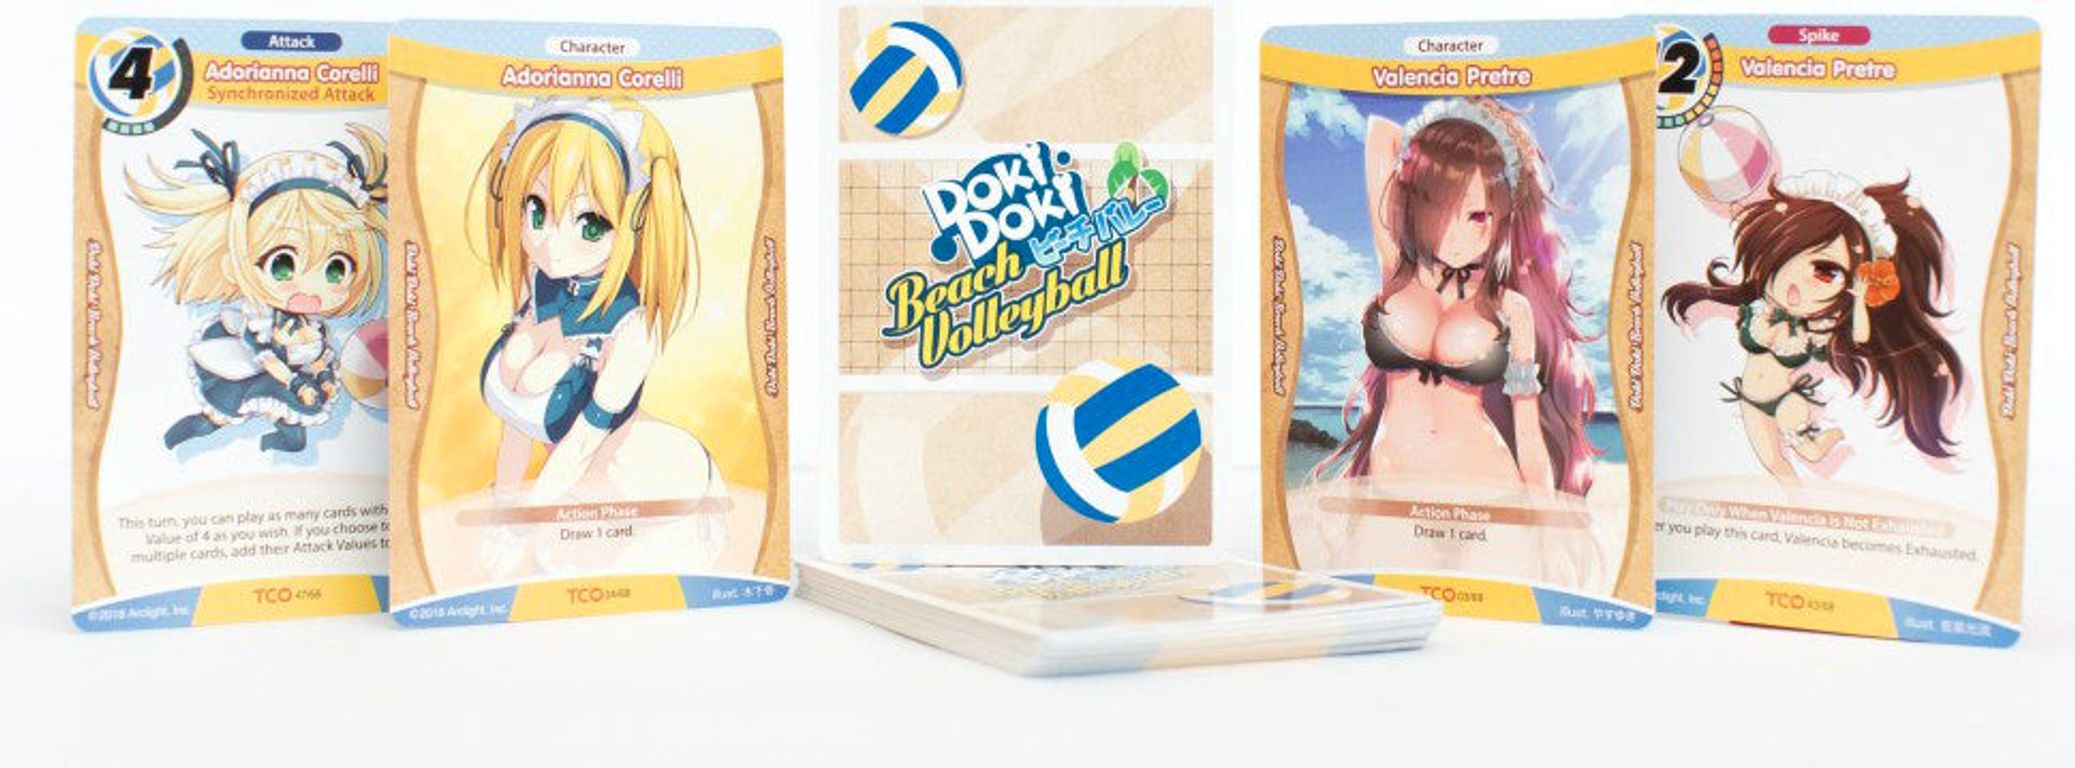 Tanto Cuore: Doki Doki Beach Volleyball cartes